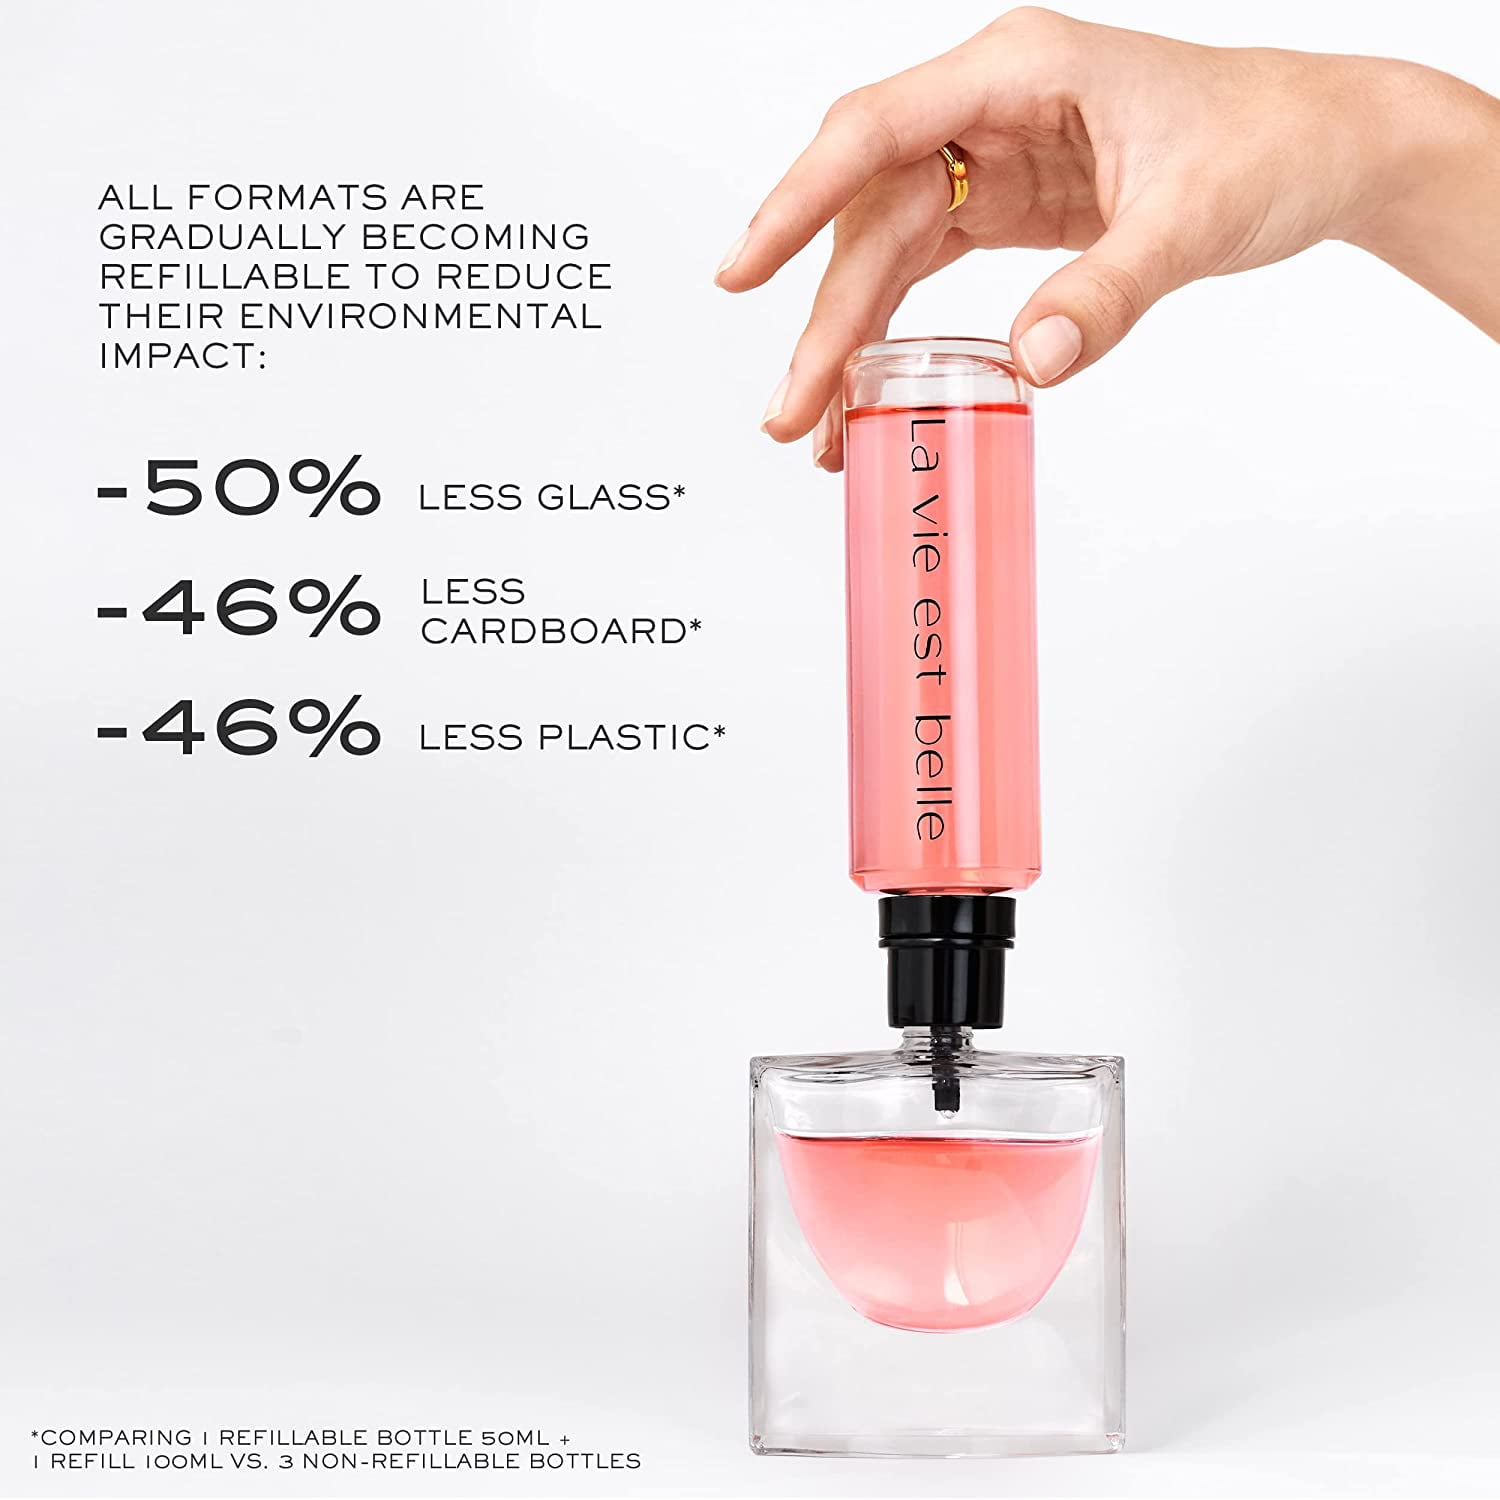 LA VIE EST BELLE L'ÉCLAT EAU DE PARFUM perfume by Lancôme – Wikiparfum